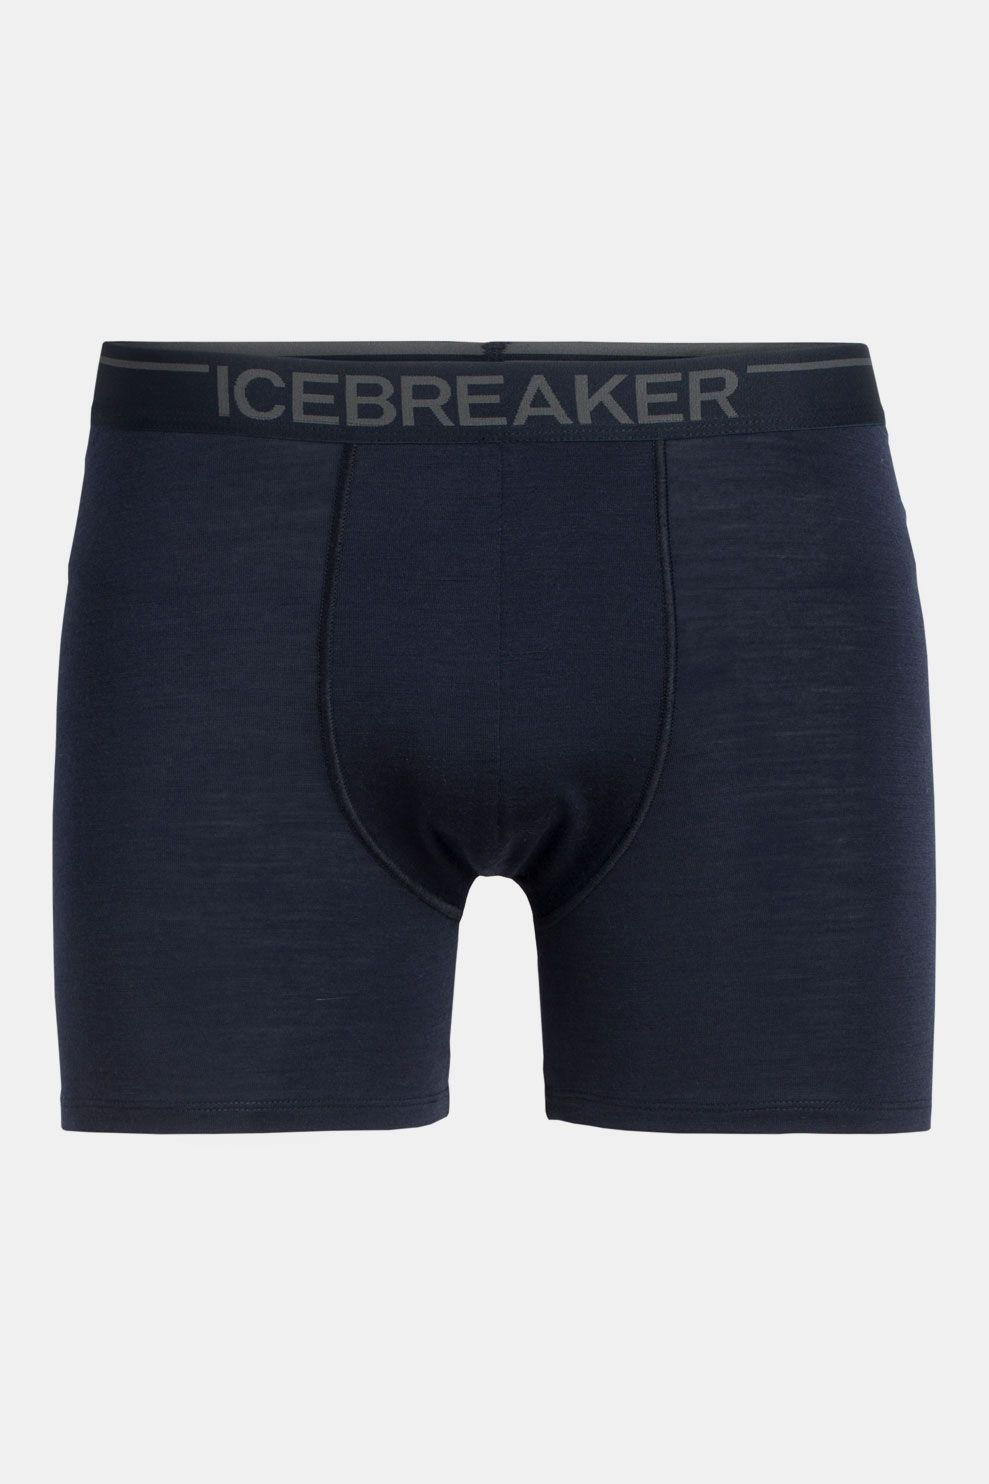 Icebreaker Anatomica Boxer Marineblauw/Donkerblauw